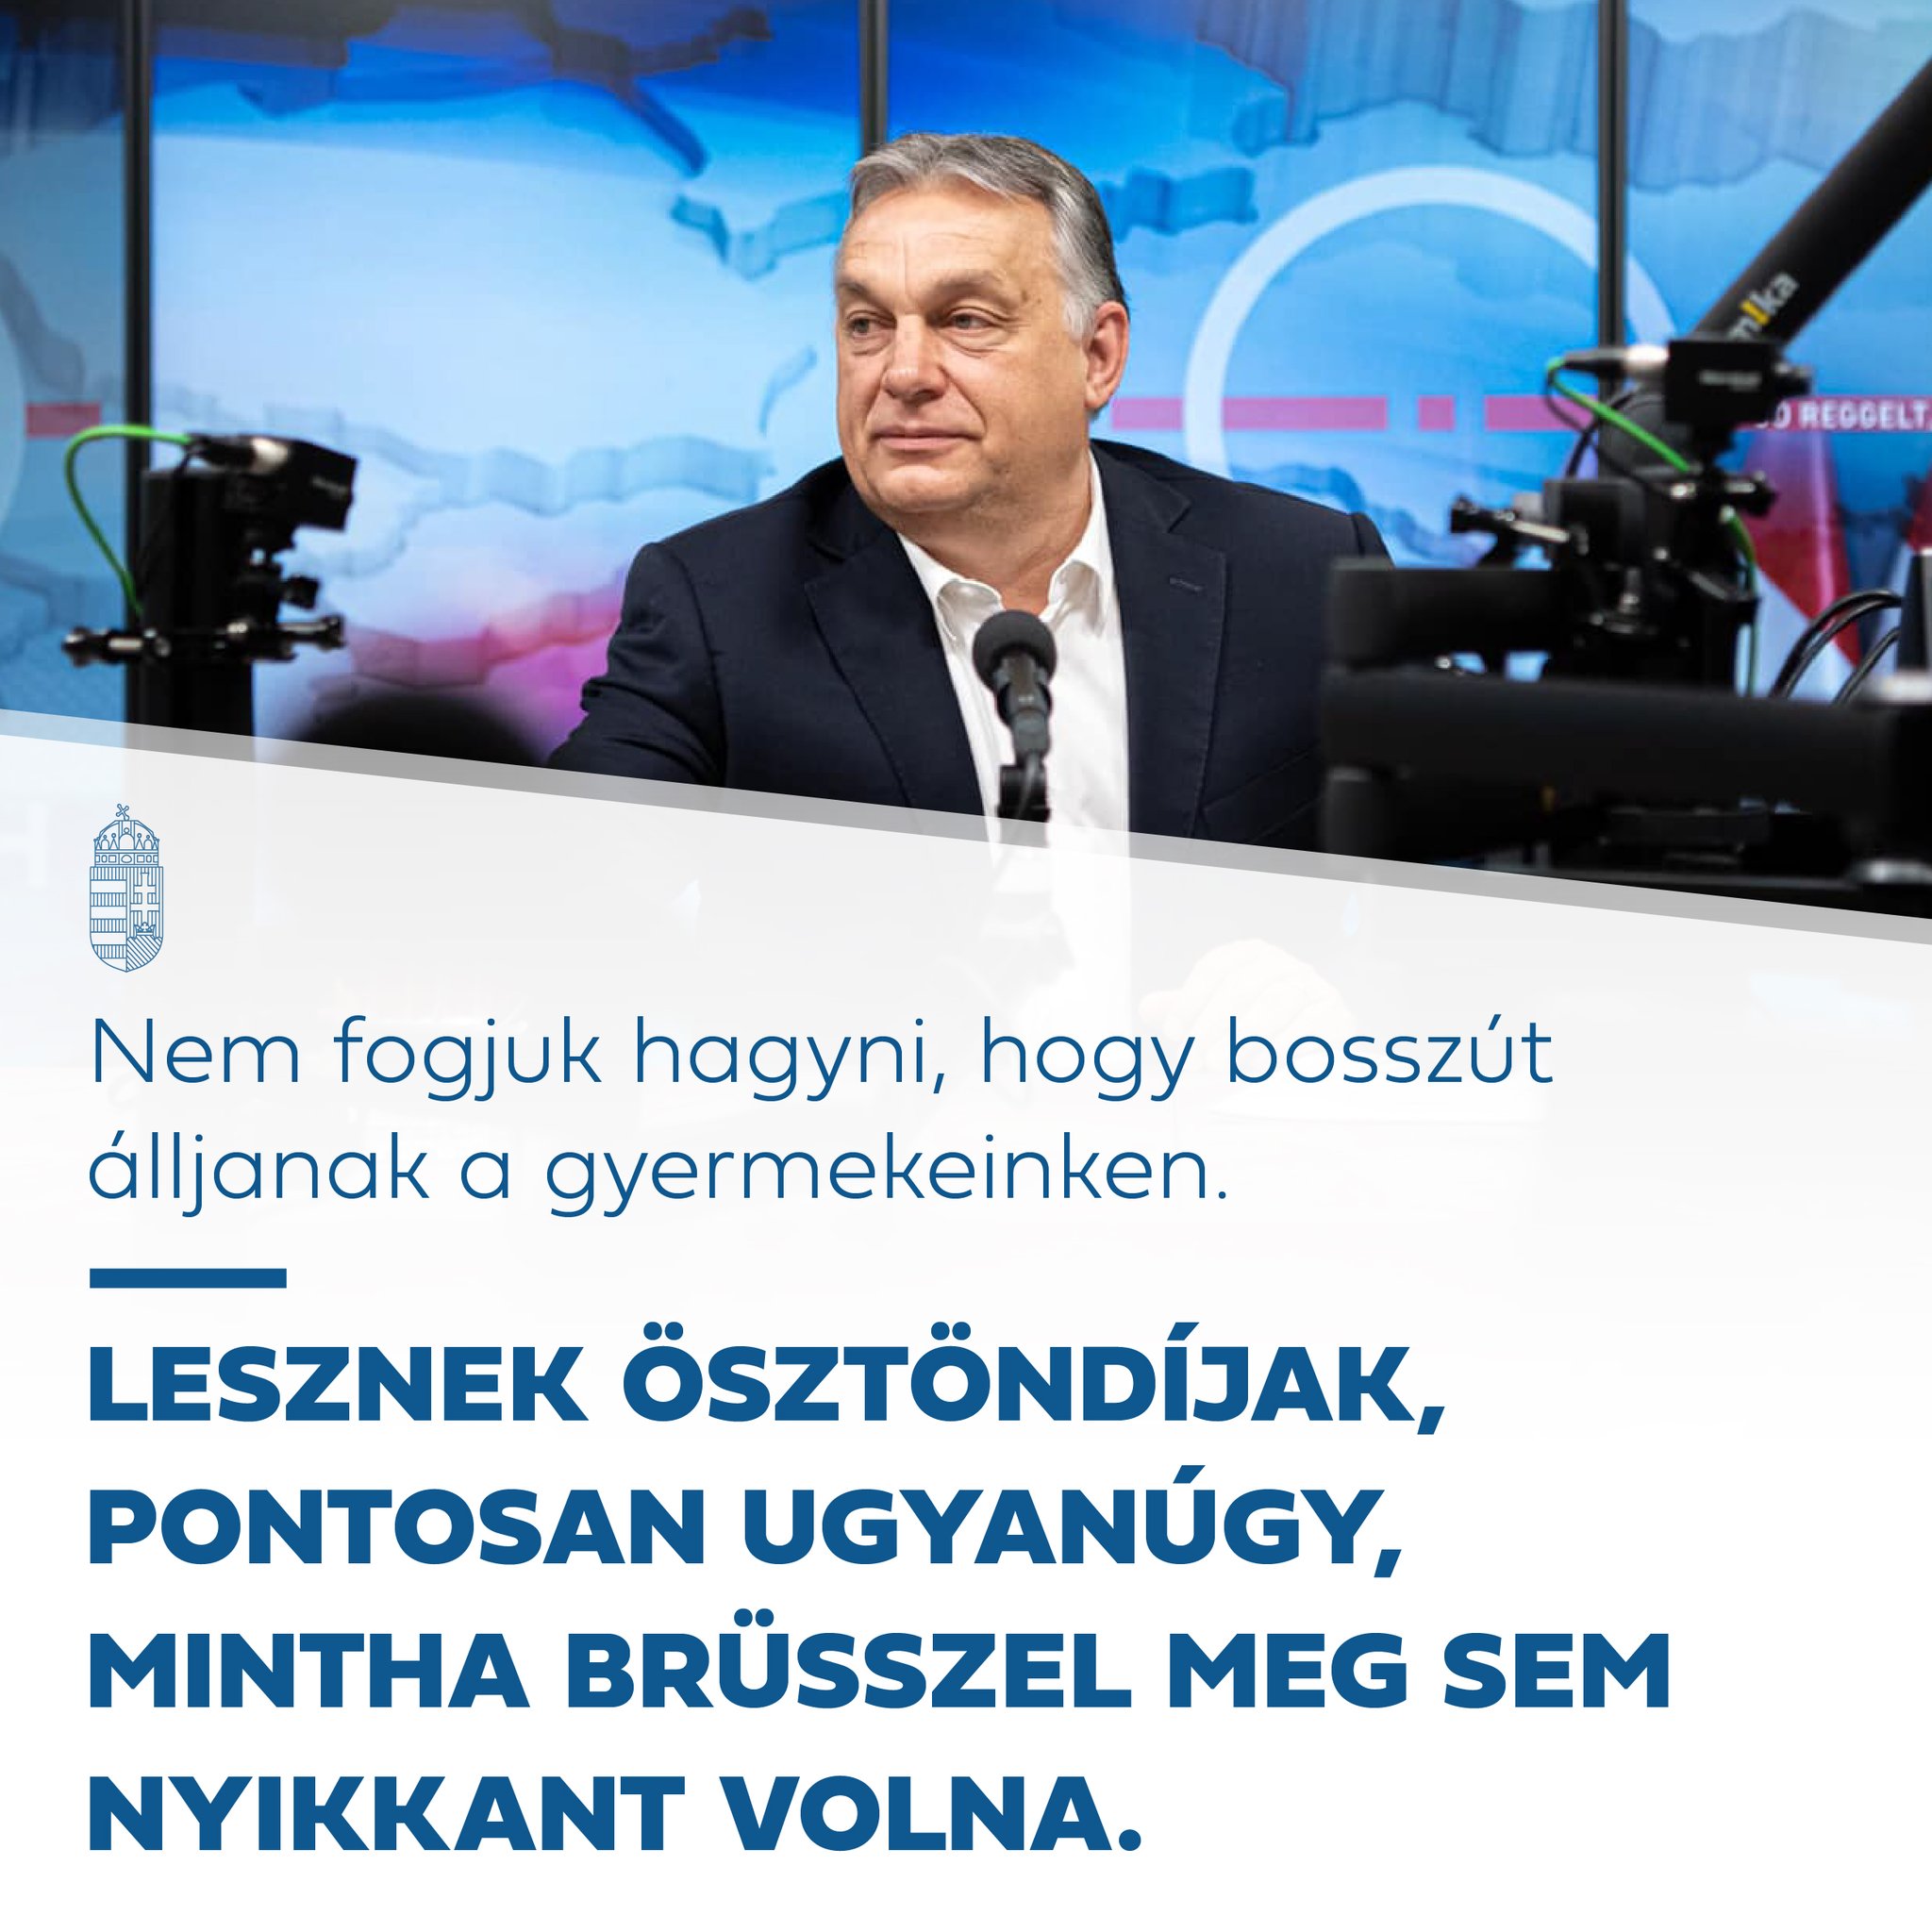 A fiatalok tehetségében rejlő erőforrásokról Magyarország nem mond le!